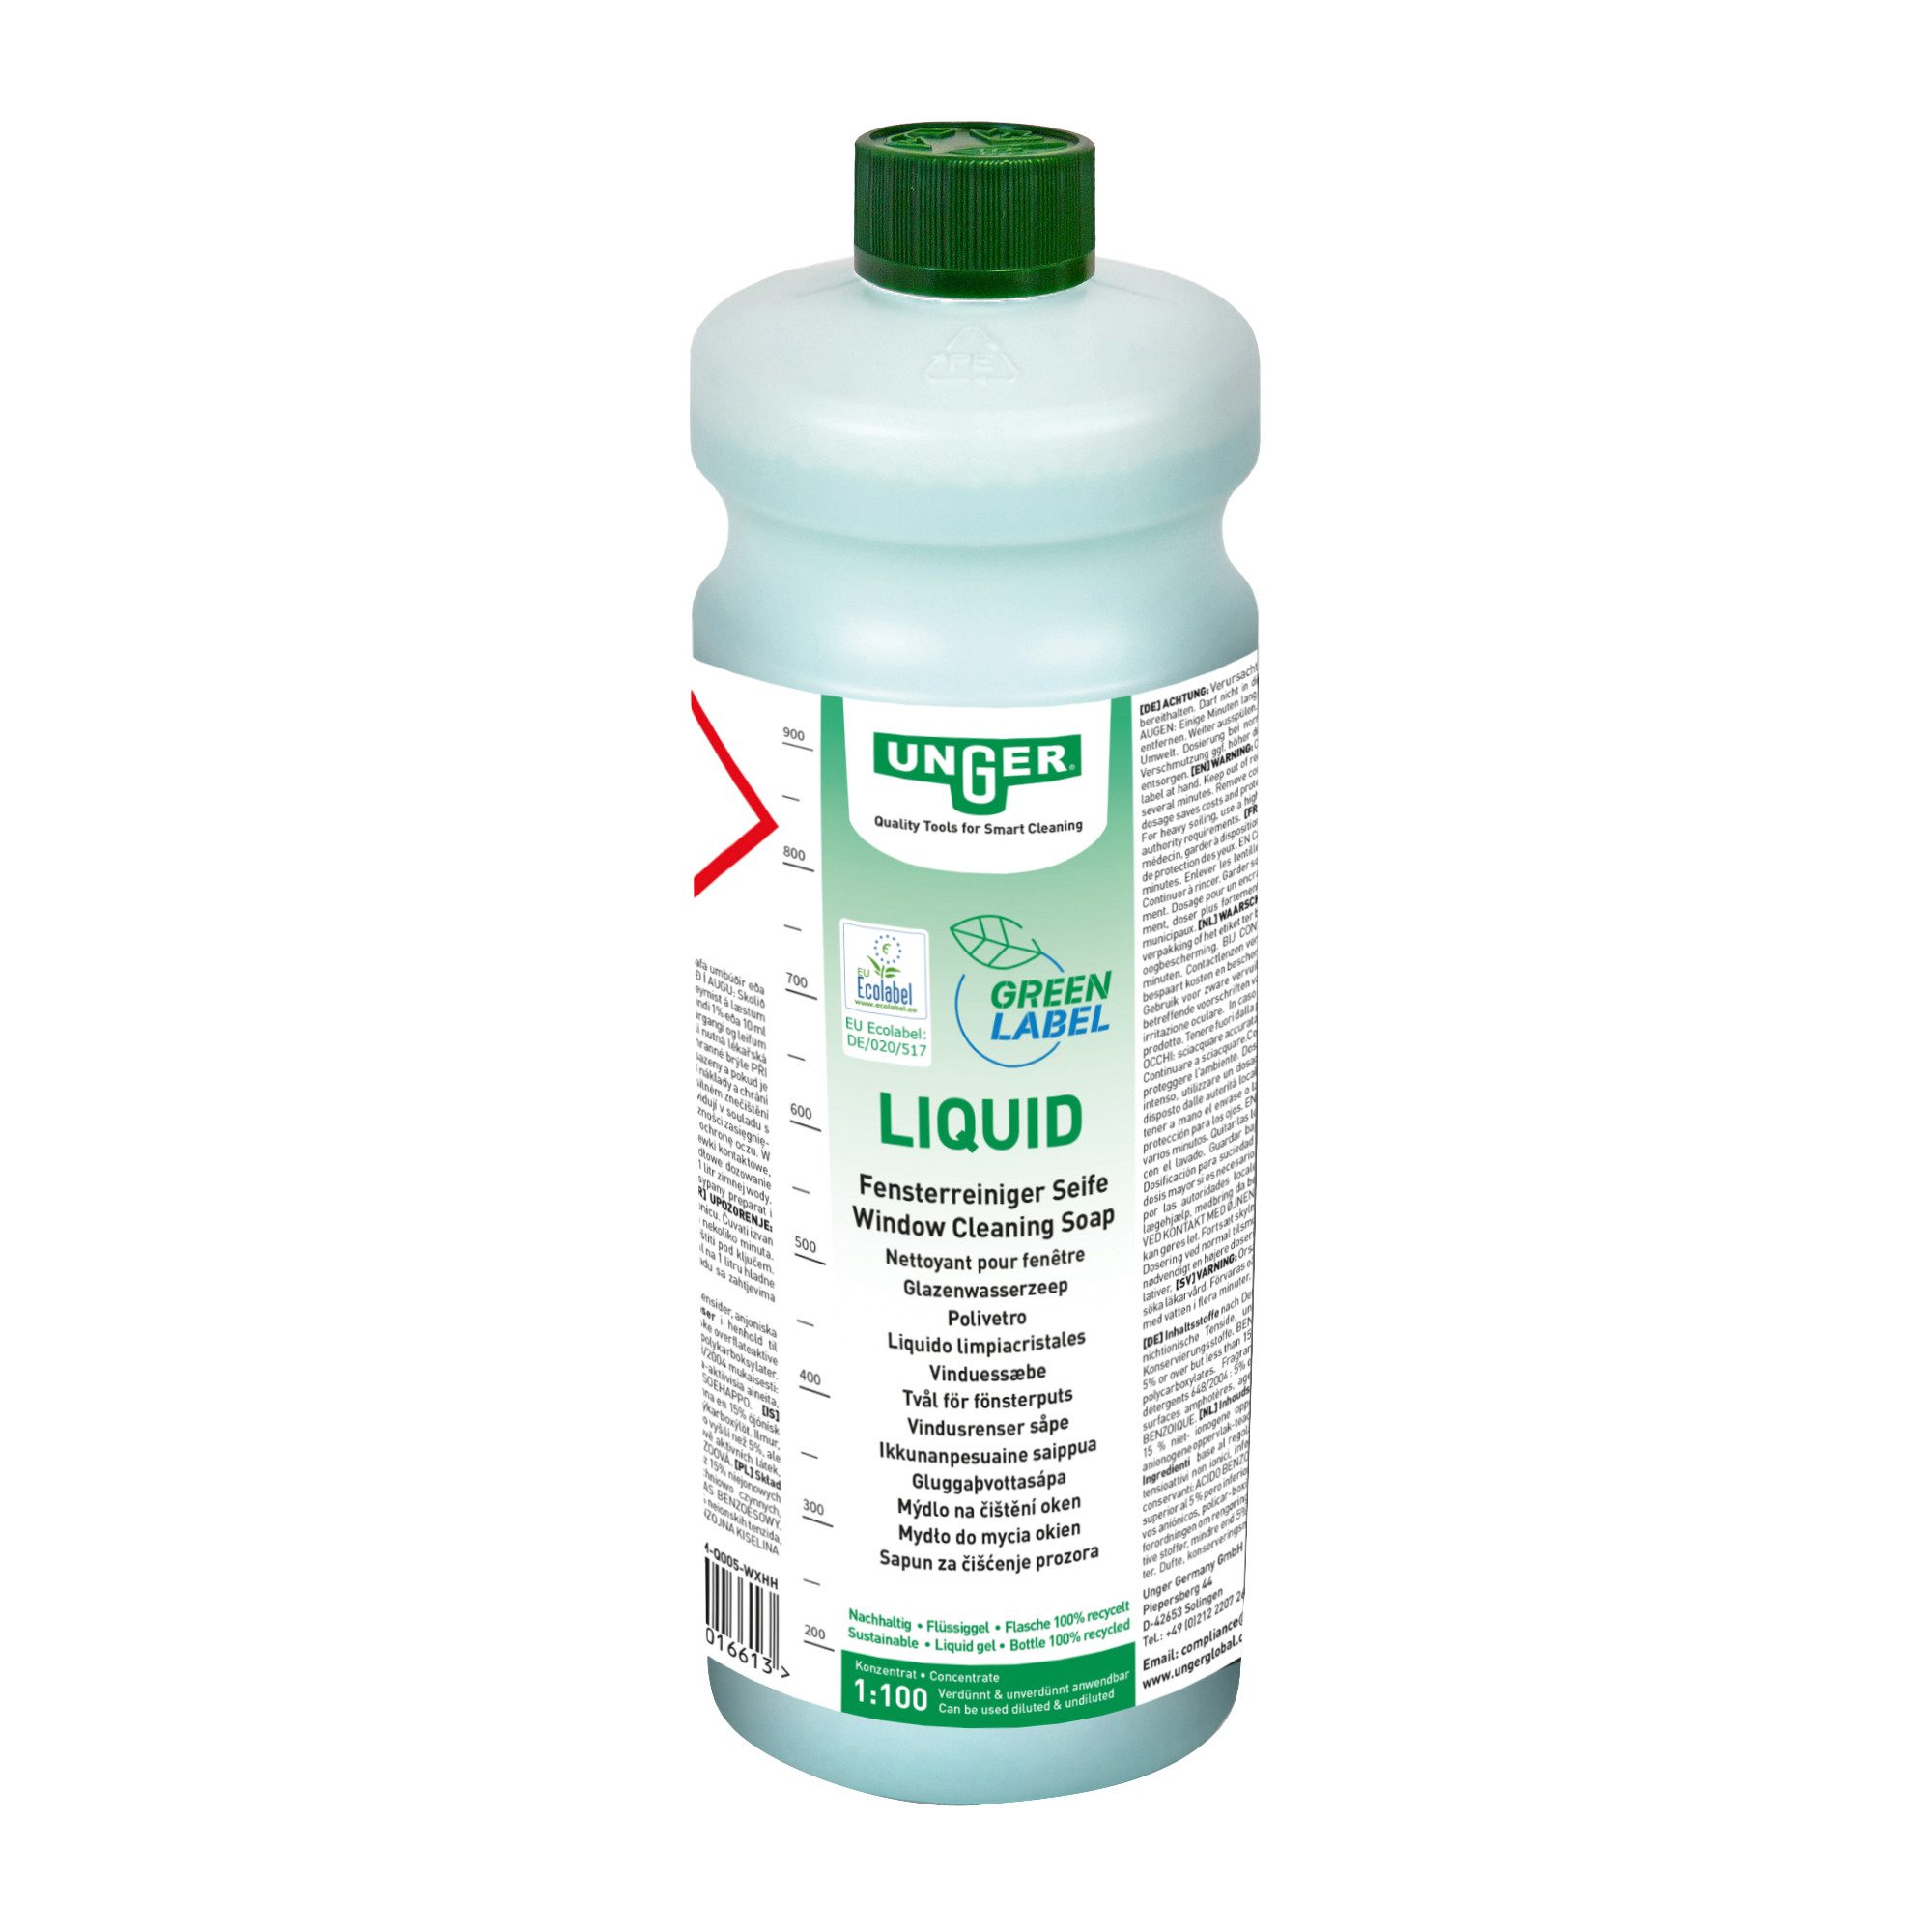 Unger Unger Green Label Liquid 1 Liter Scheibenreiniger